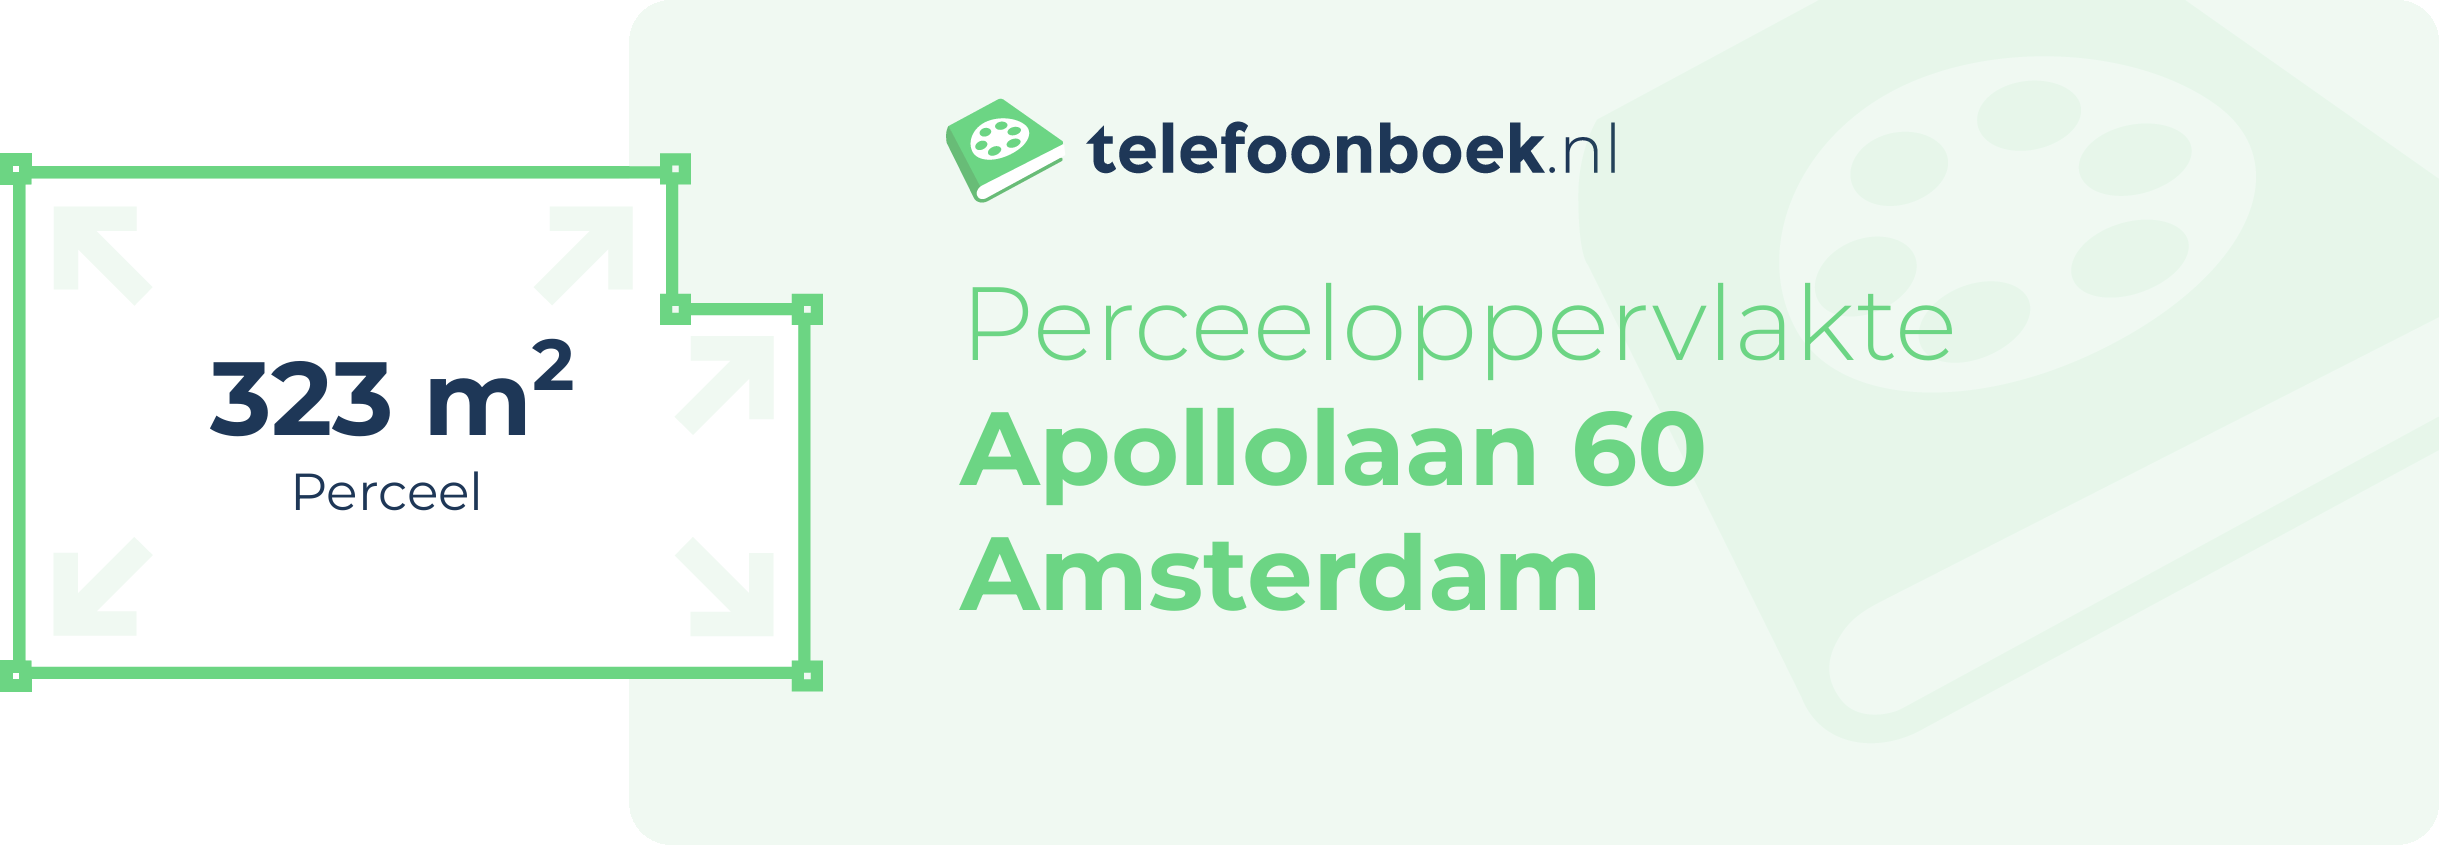 Perceeloppervlakte Apollolaan 60 Amsterdam